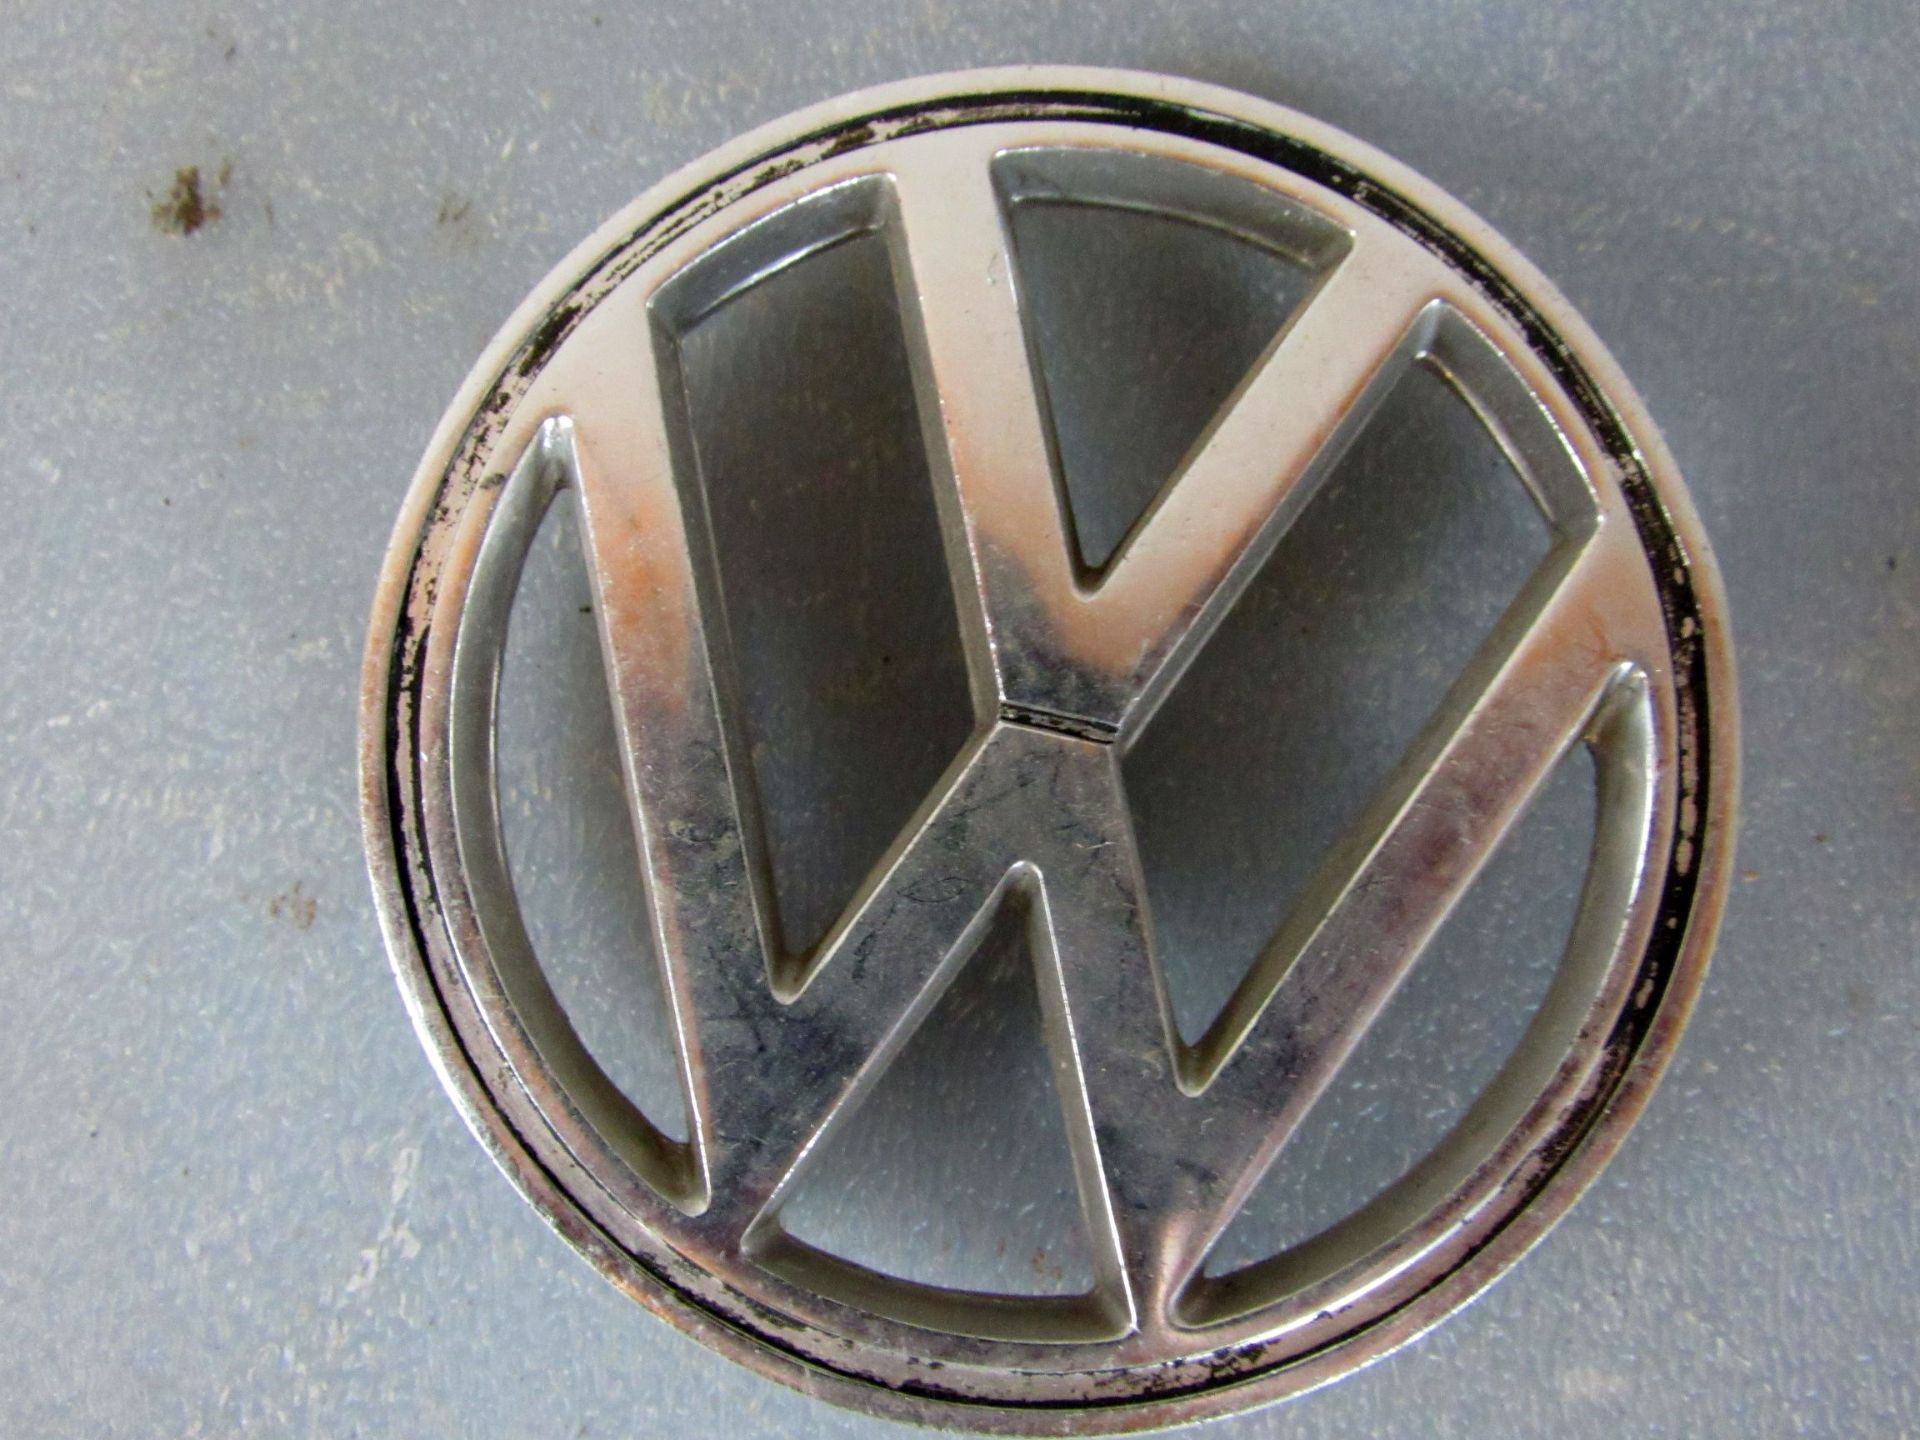 Oldtimer VW KÃ¤fer Volkswagen - Image 3 of 7